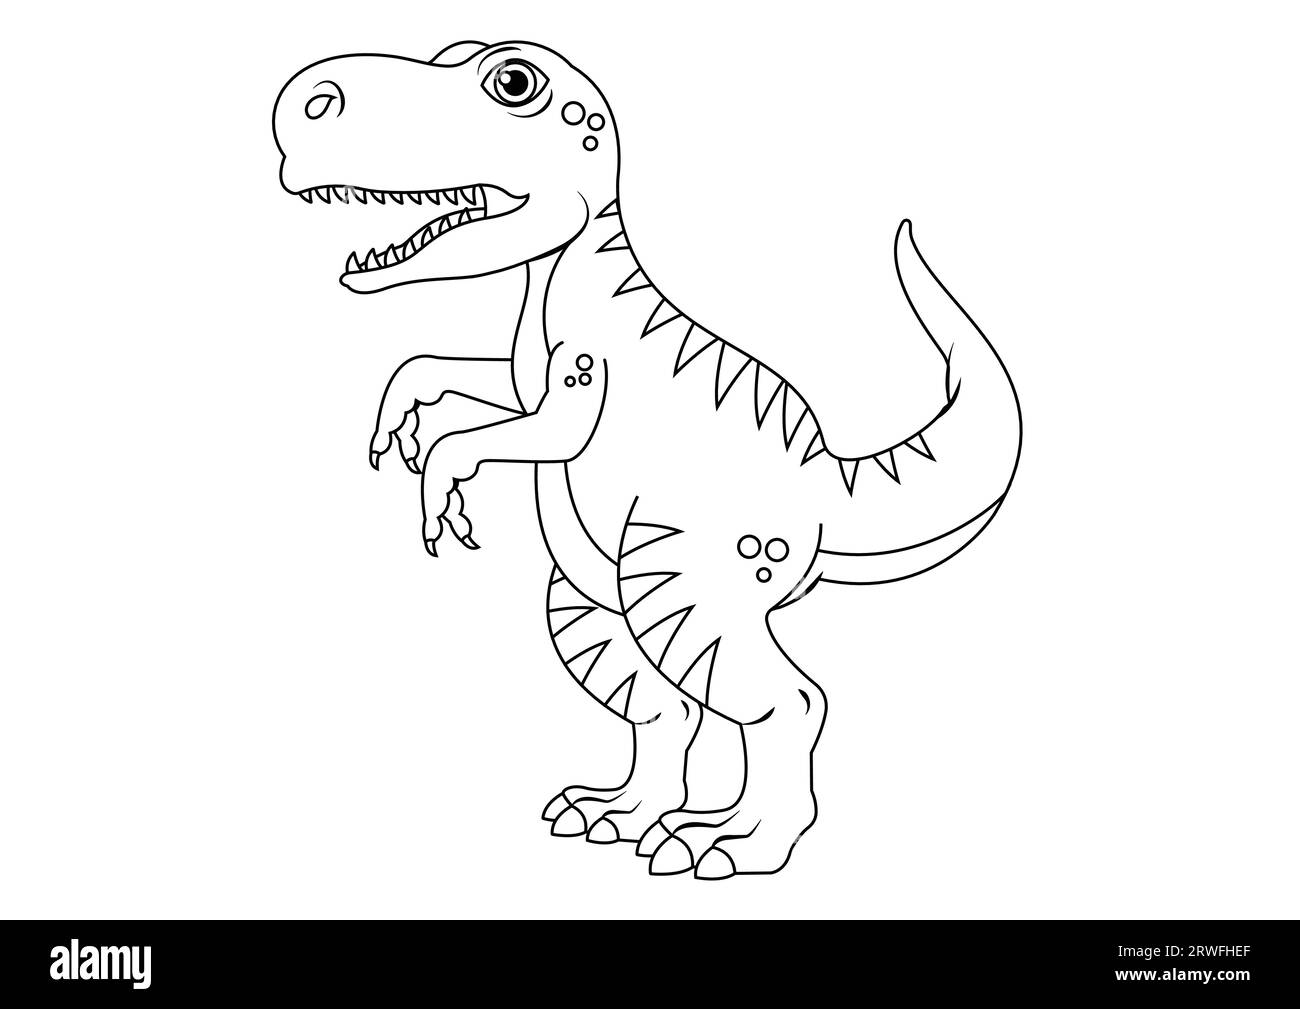 Schwarz-weiß T-rex Dinosaurier Zeichentrickfigur Vektor. Malseite eines T-rex-Dinosauriers Stock Vektor